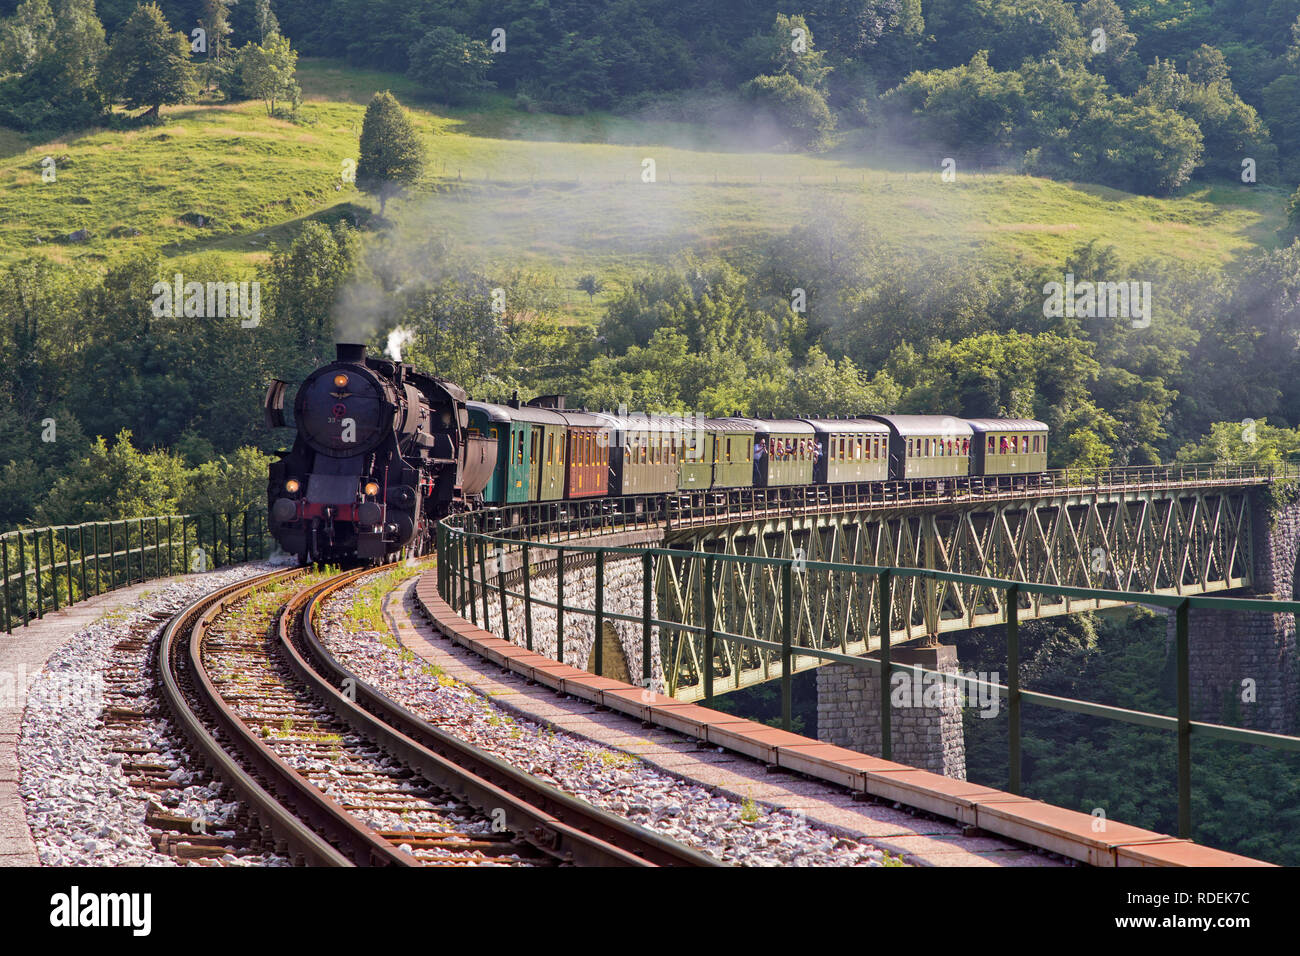 Alten Dampfzug der Überquerung der ganz Solkan Brücke in Nova Gorica, Slowenien, Europa. Viel schwarz und grau Dampf Ausblenden der Lokomotive, full frame Stockfoto